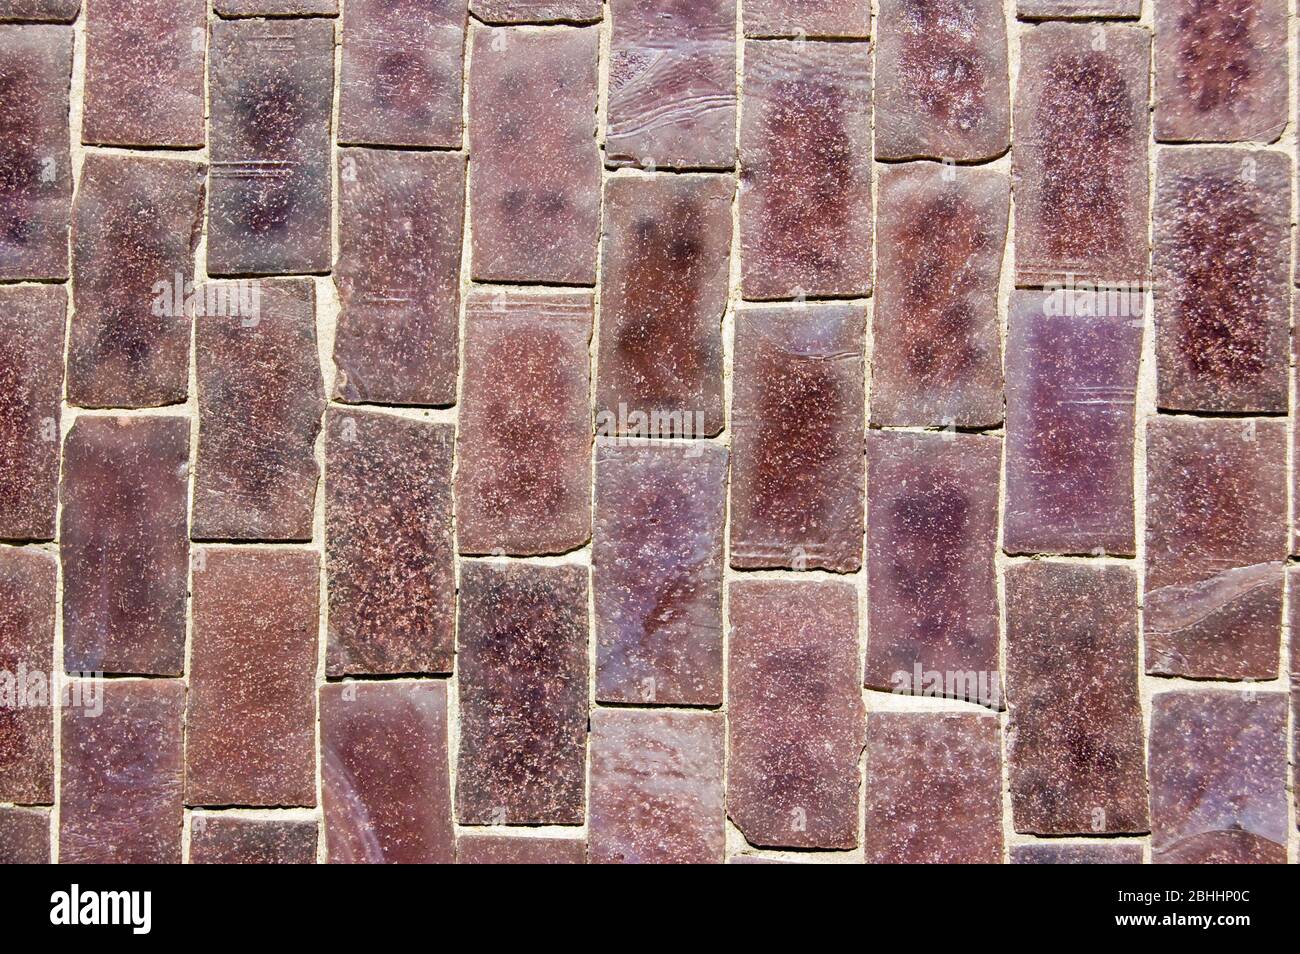 Gros plan sur un mur recouvert de carreaux de céramique de mosaïque violette. Banque D'Images